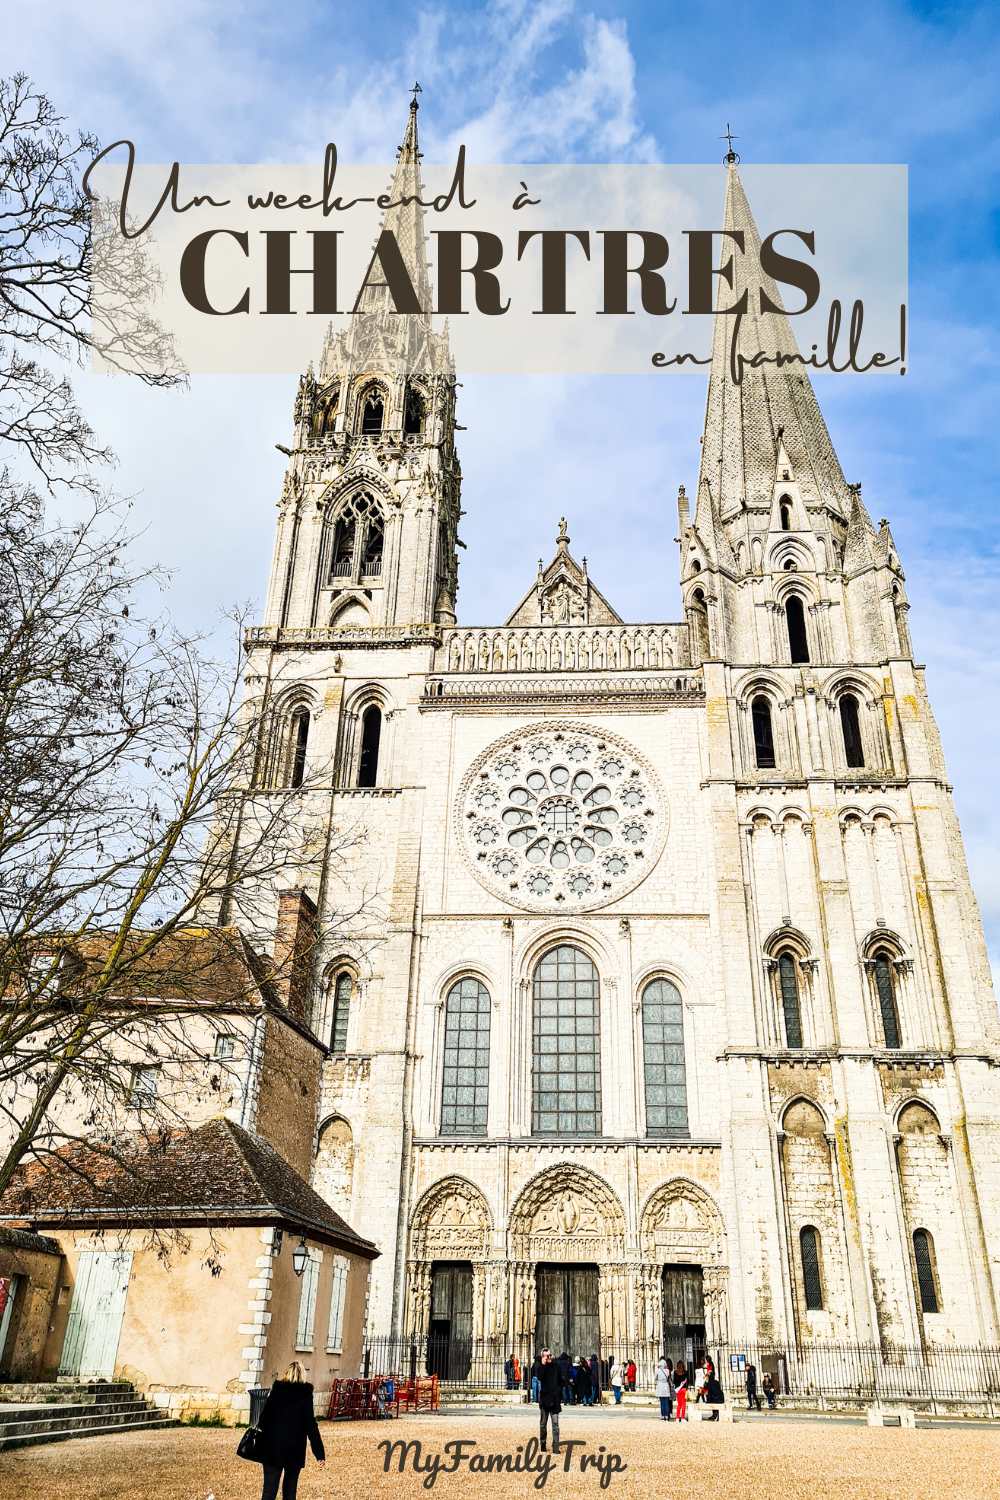 Week-end à Chartres en famille